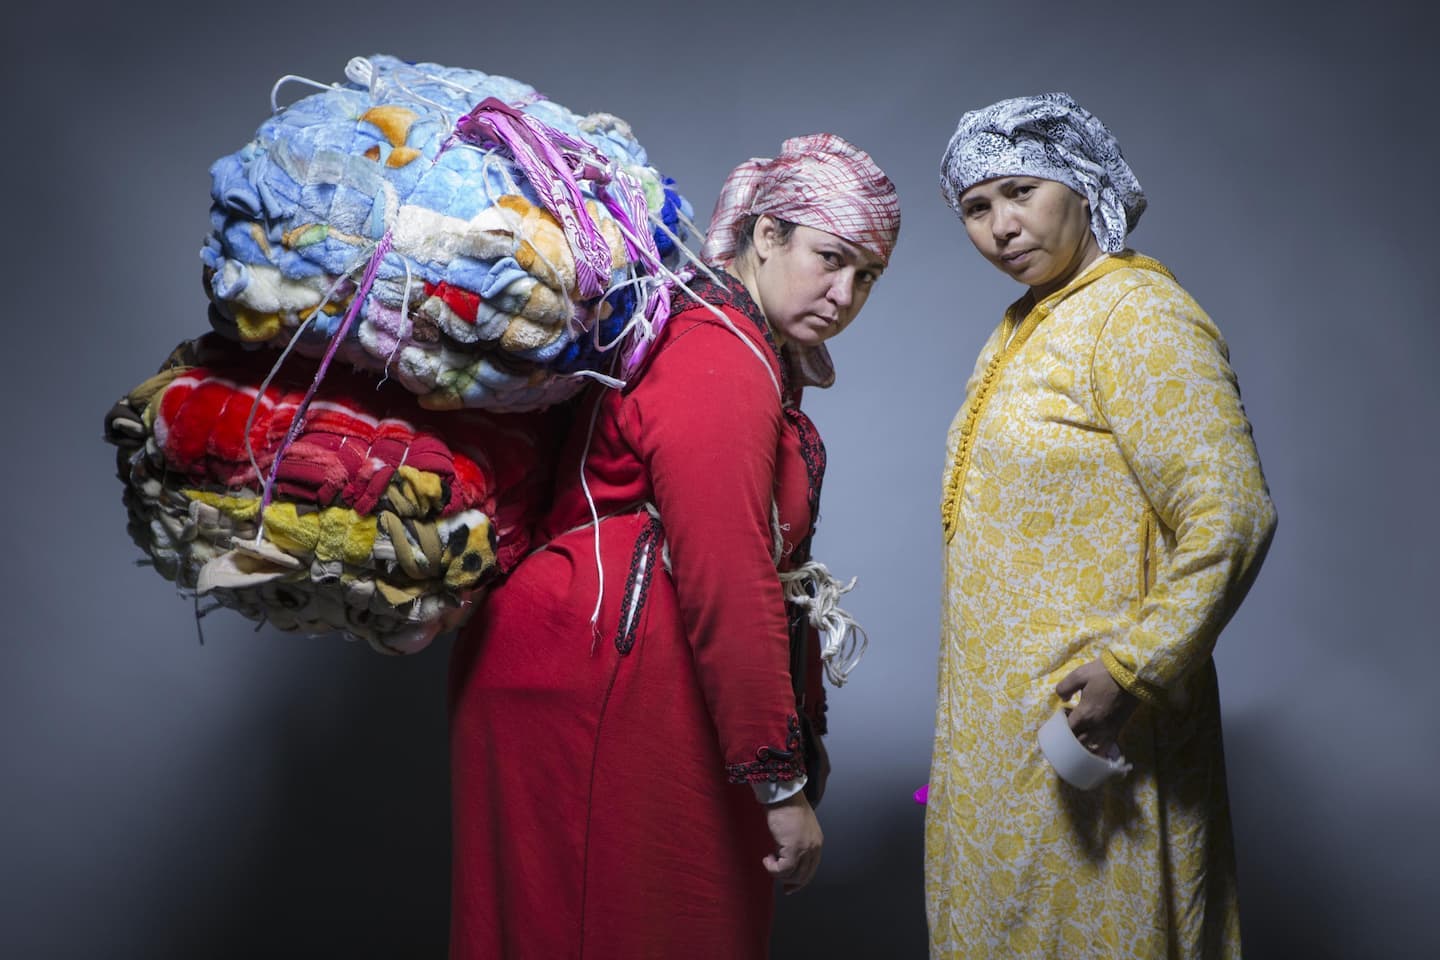 Randa Maroufi, Nabila & Keltoum, 2015. Photographie couleur sur tissu, 146 x 217 cm Achat à l’artiste. Collection FRAC Champagne-Ardenne. ©DR